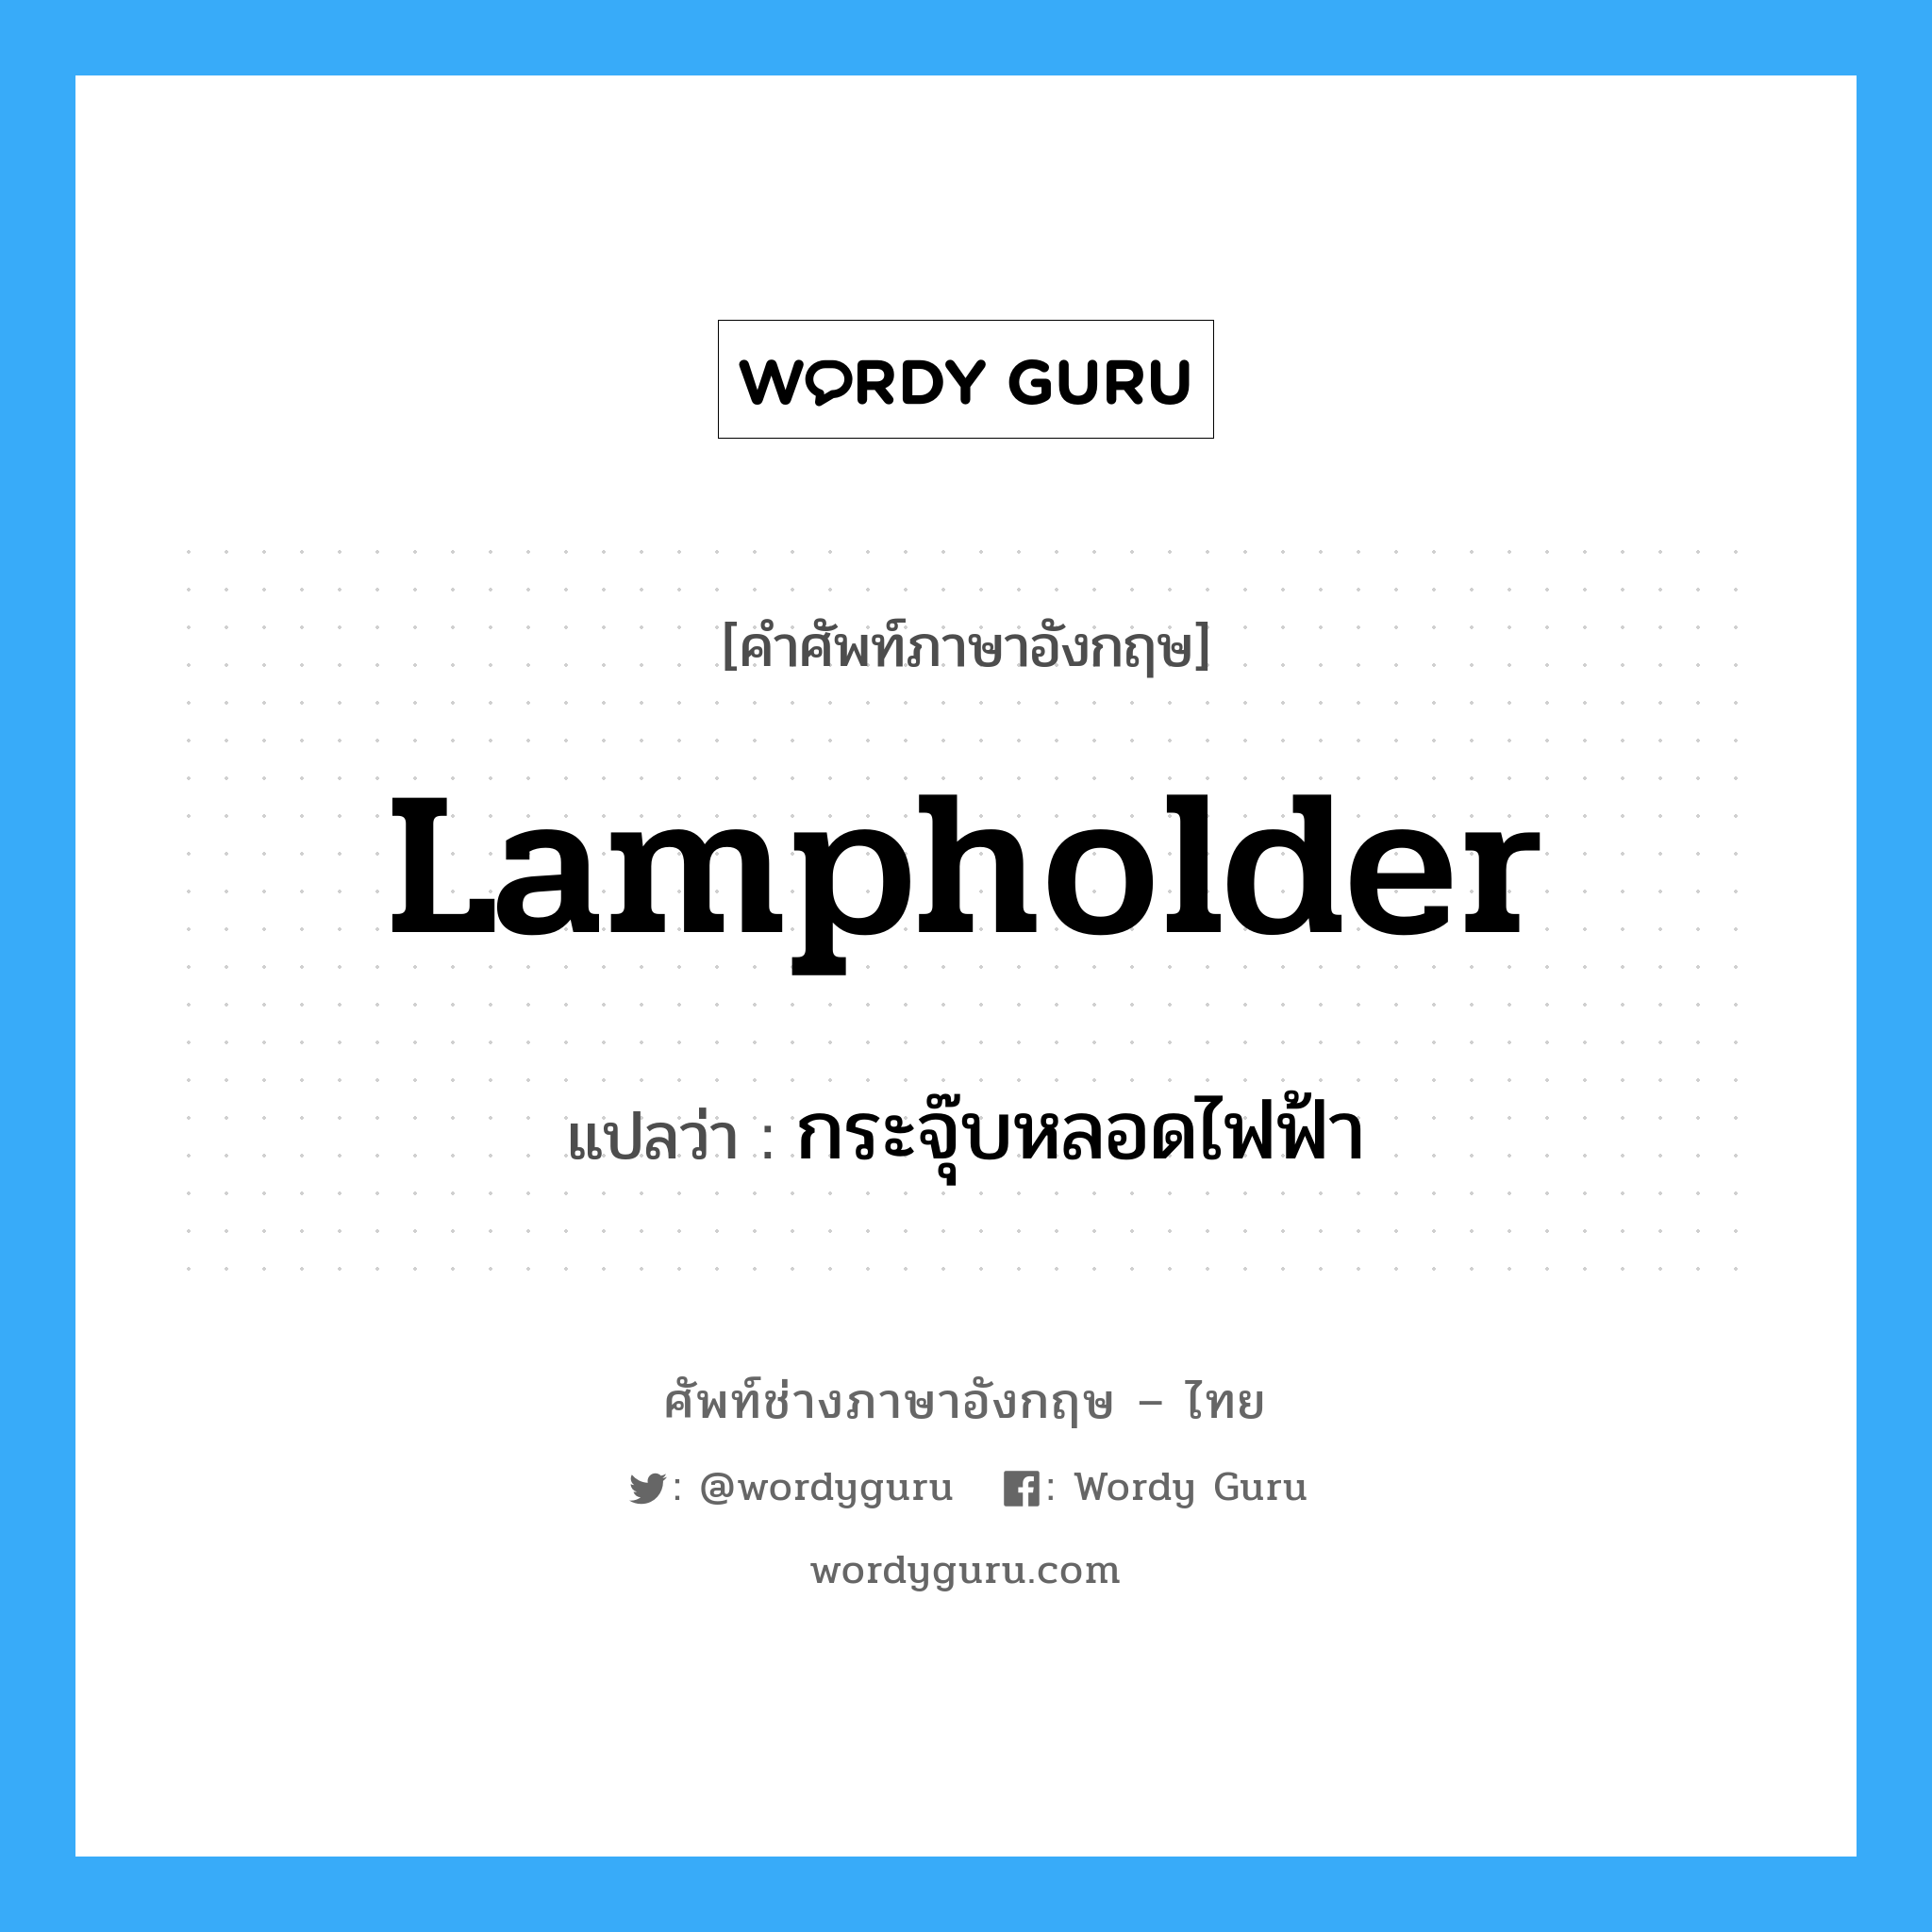 lampholder แปลว่า?, คำศัพท์ช่างภาษาอังกฤษ - ไทย lampholder คำศัพท์ภาษาอังกฤษ lampholder แปลว่า กระจุ๊บหลอดไฟฟ้า